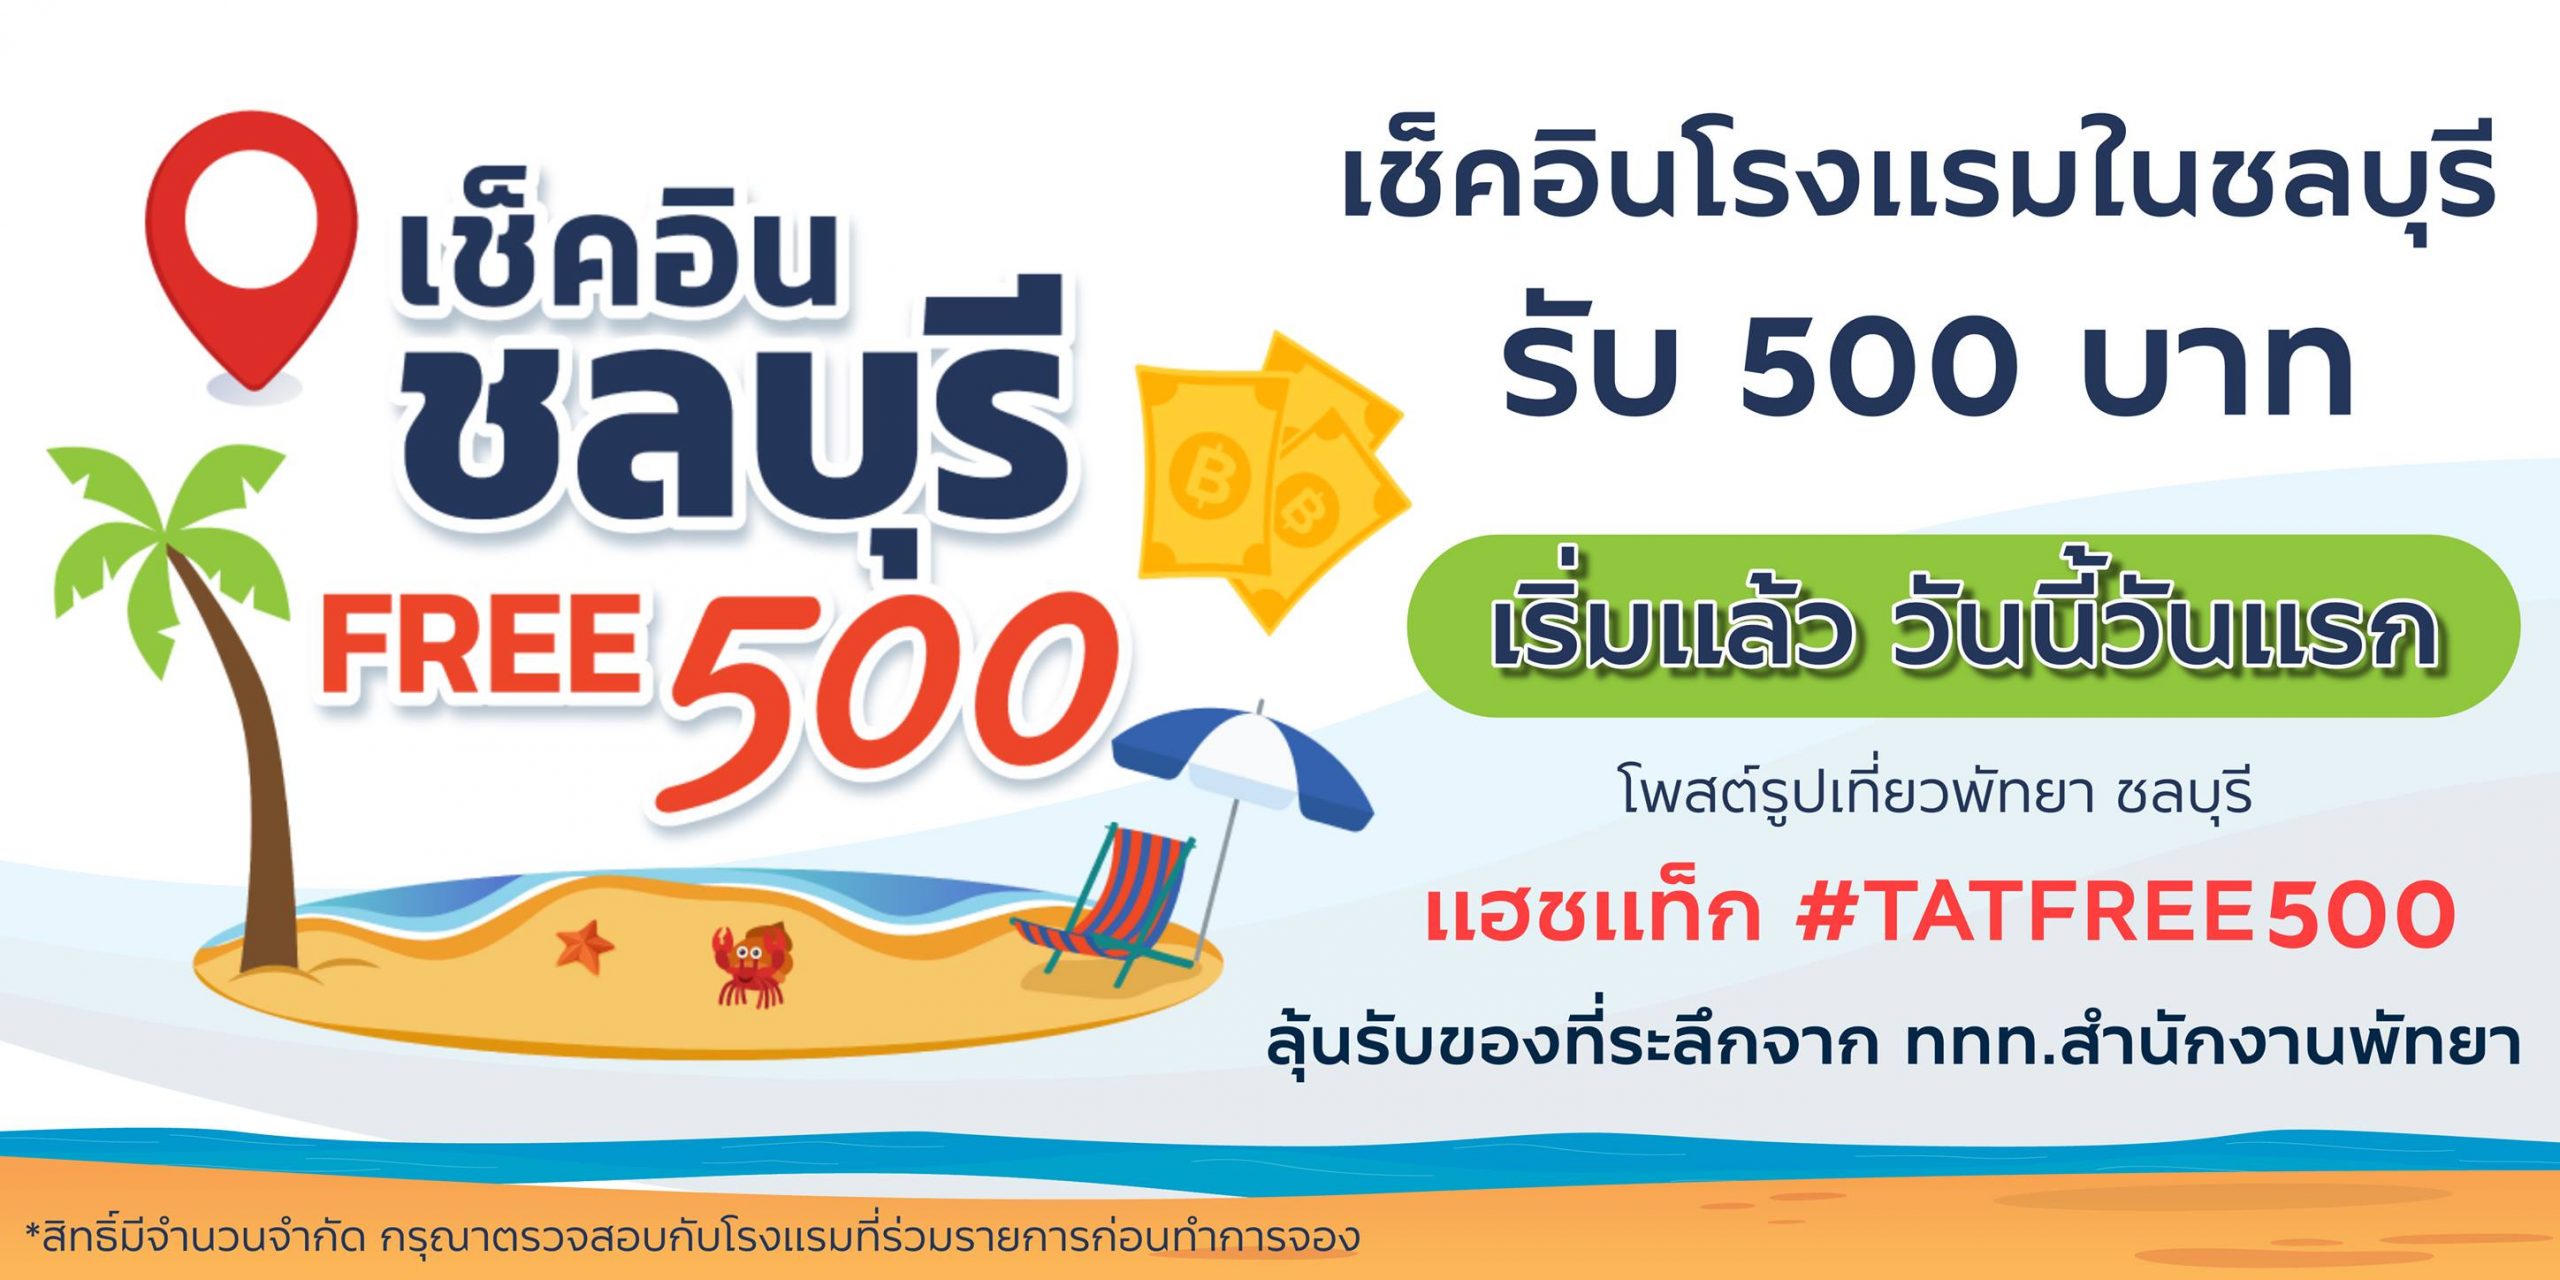 ประกาศผลแล้ว! กับกิจกรรม “Check in Chonburi Free 500”